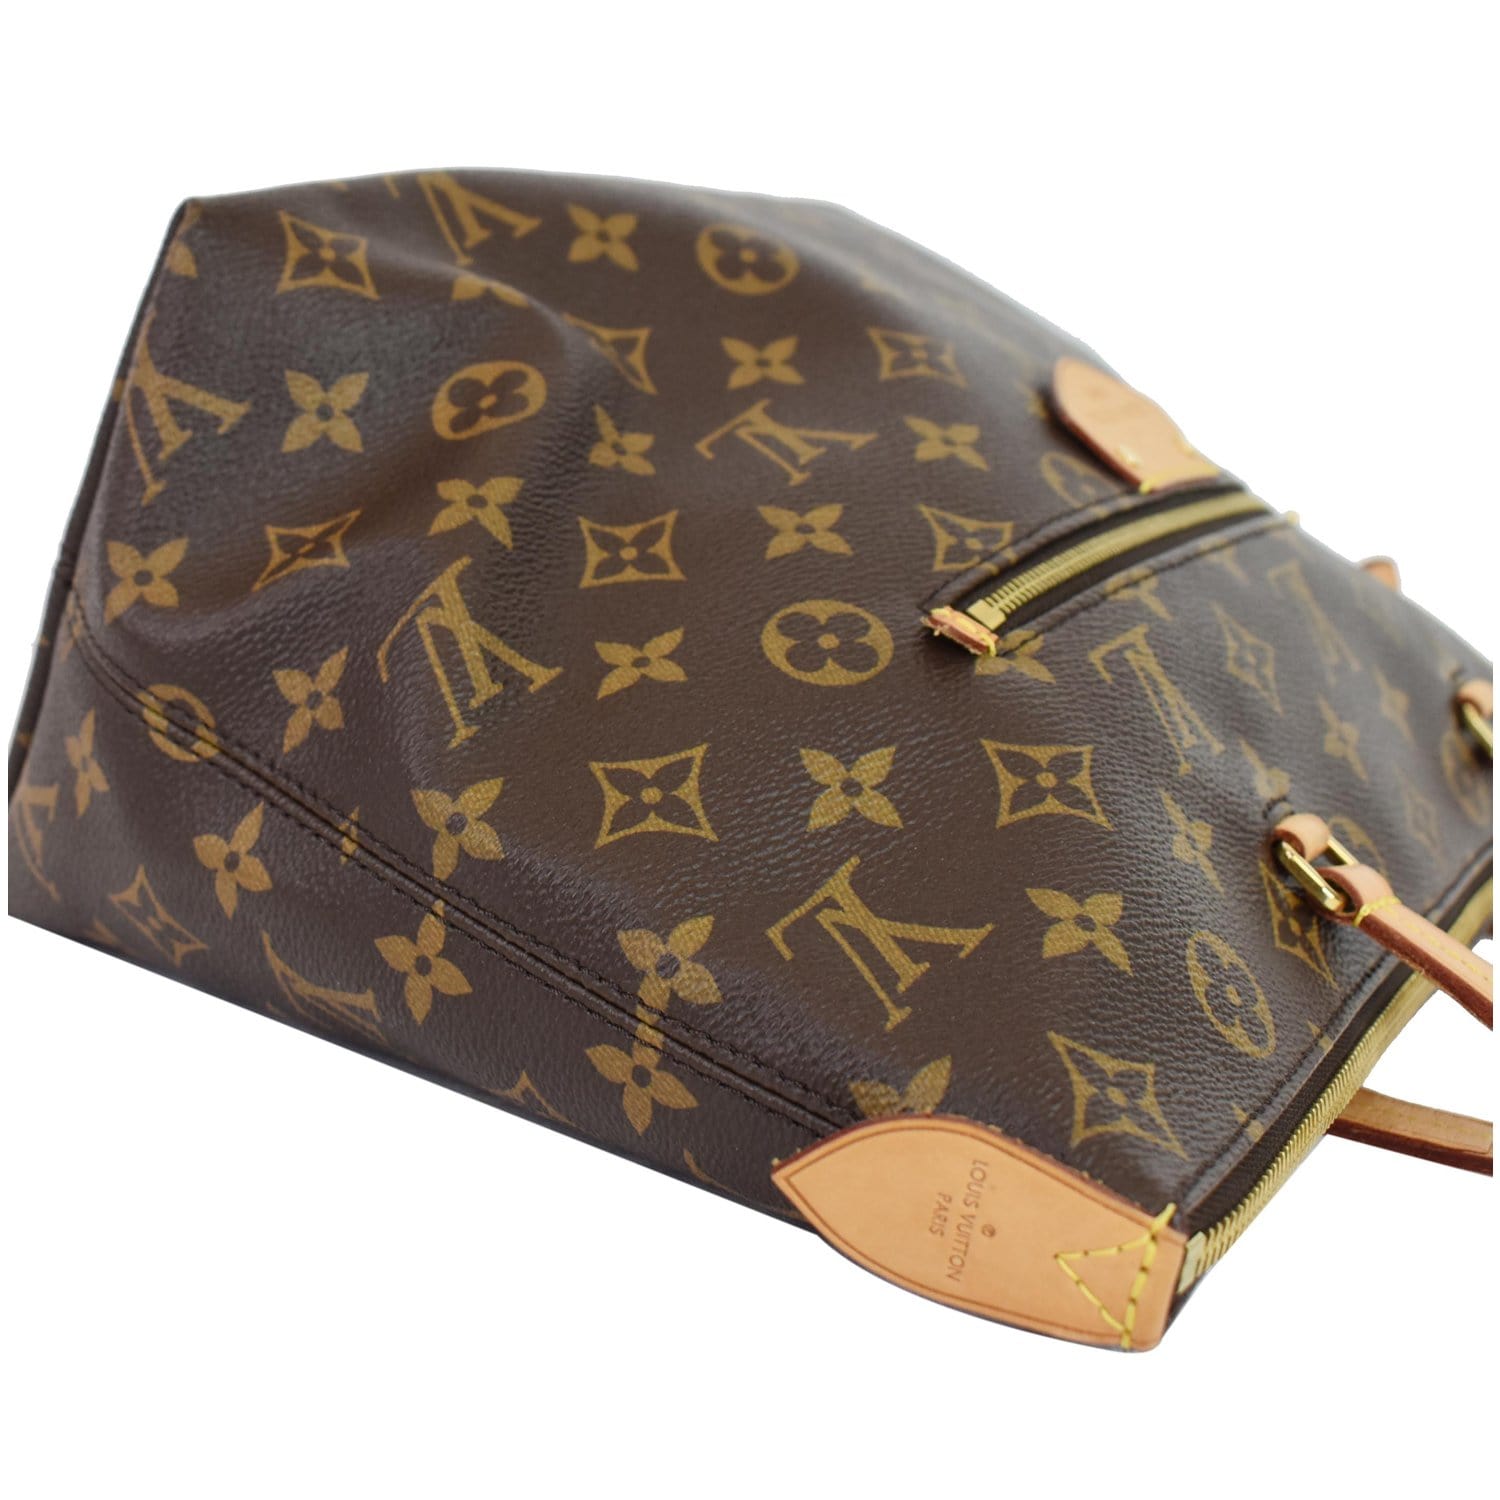 Louis Vuitton - Monogram Canvas Lena MM Tote - Brown Shoulder Bag -  BougieHabit